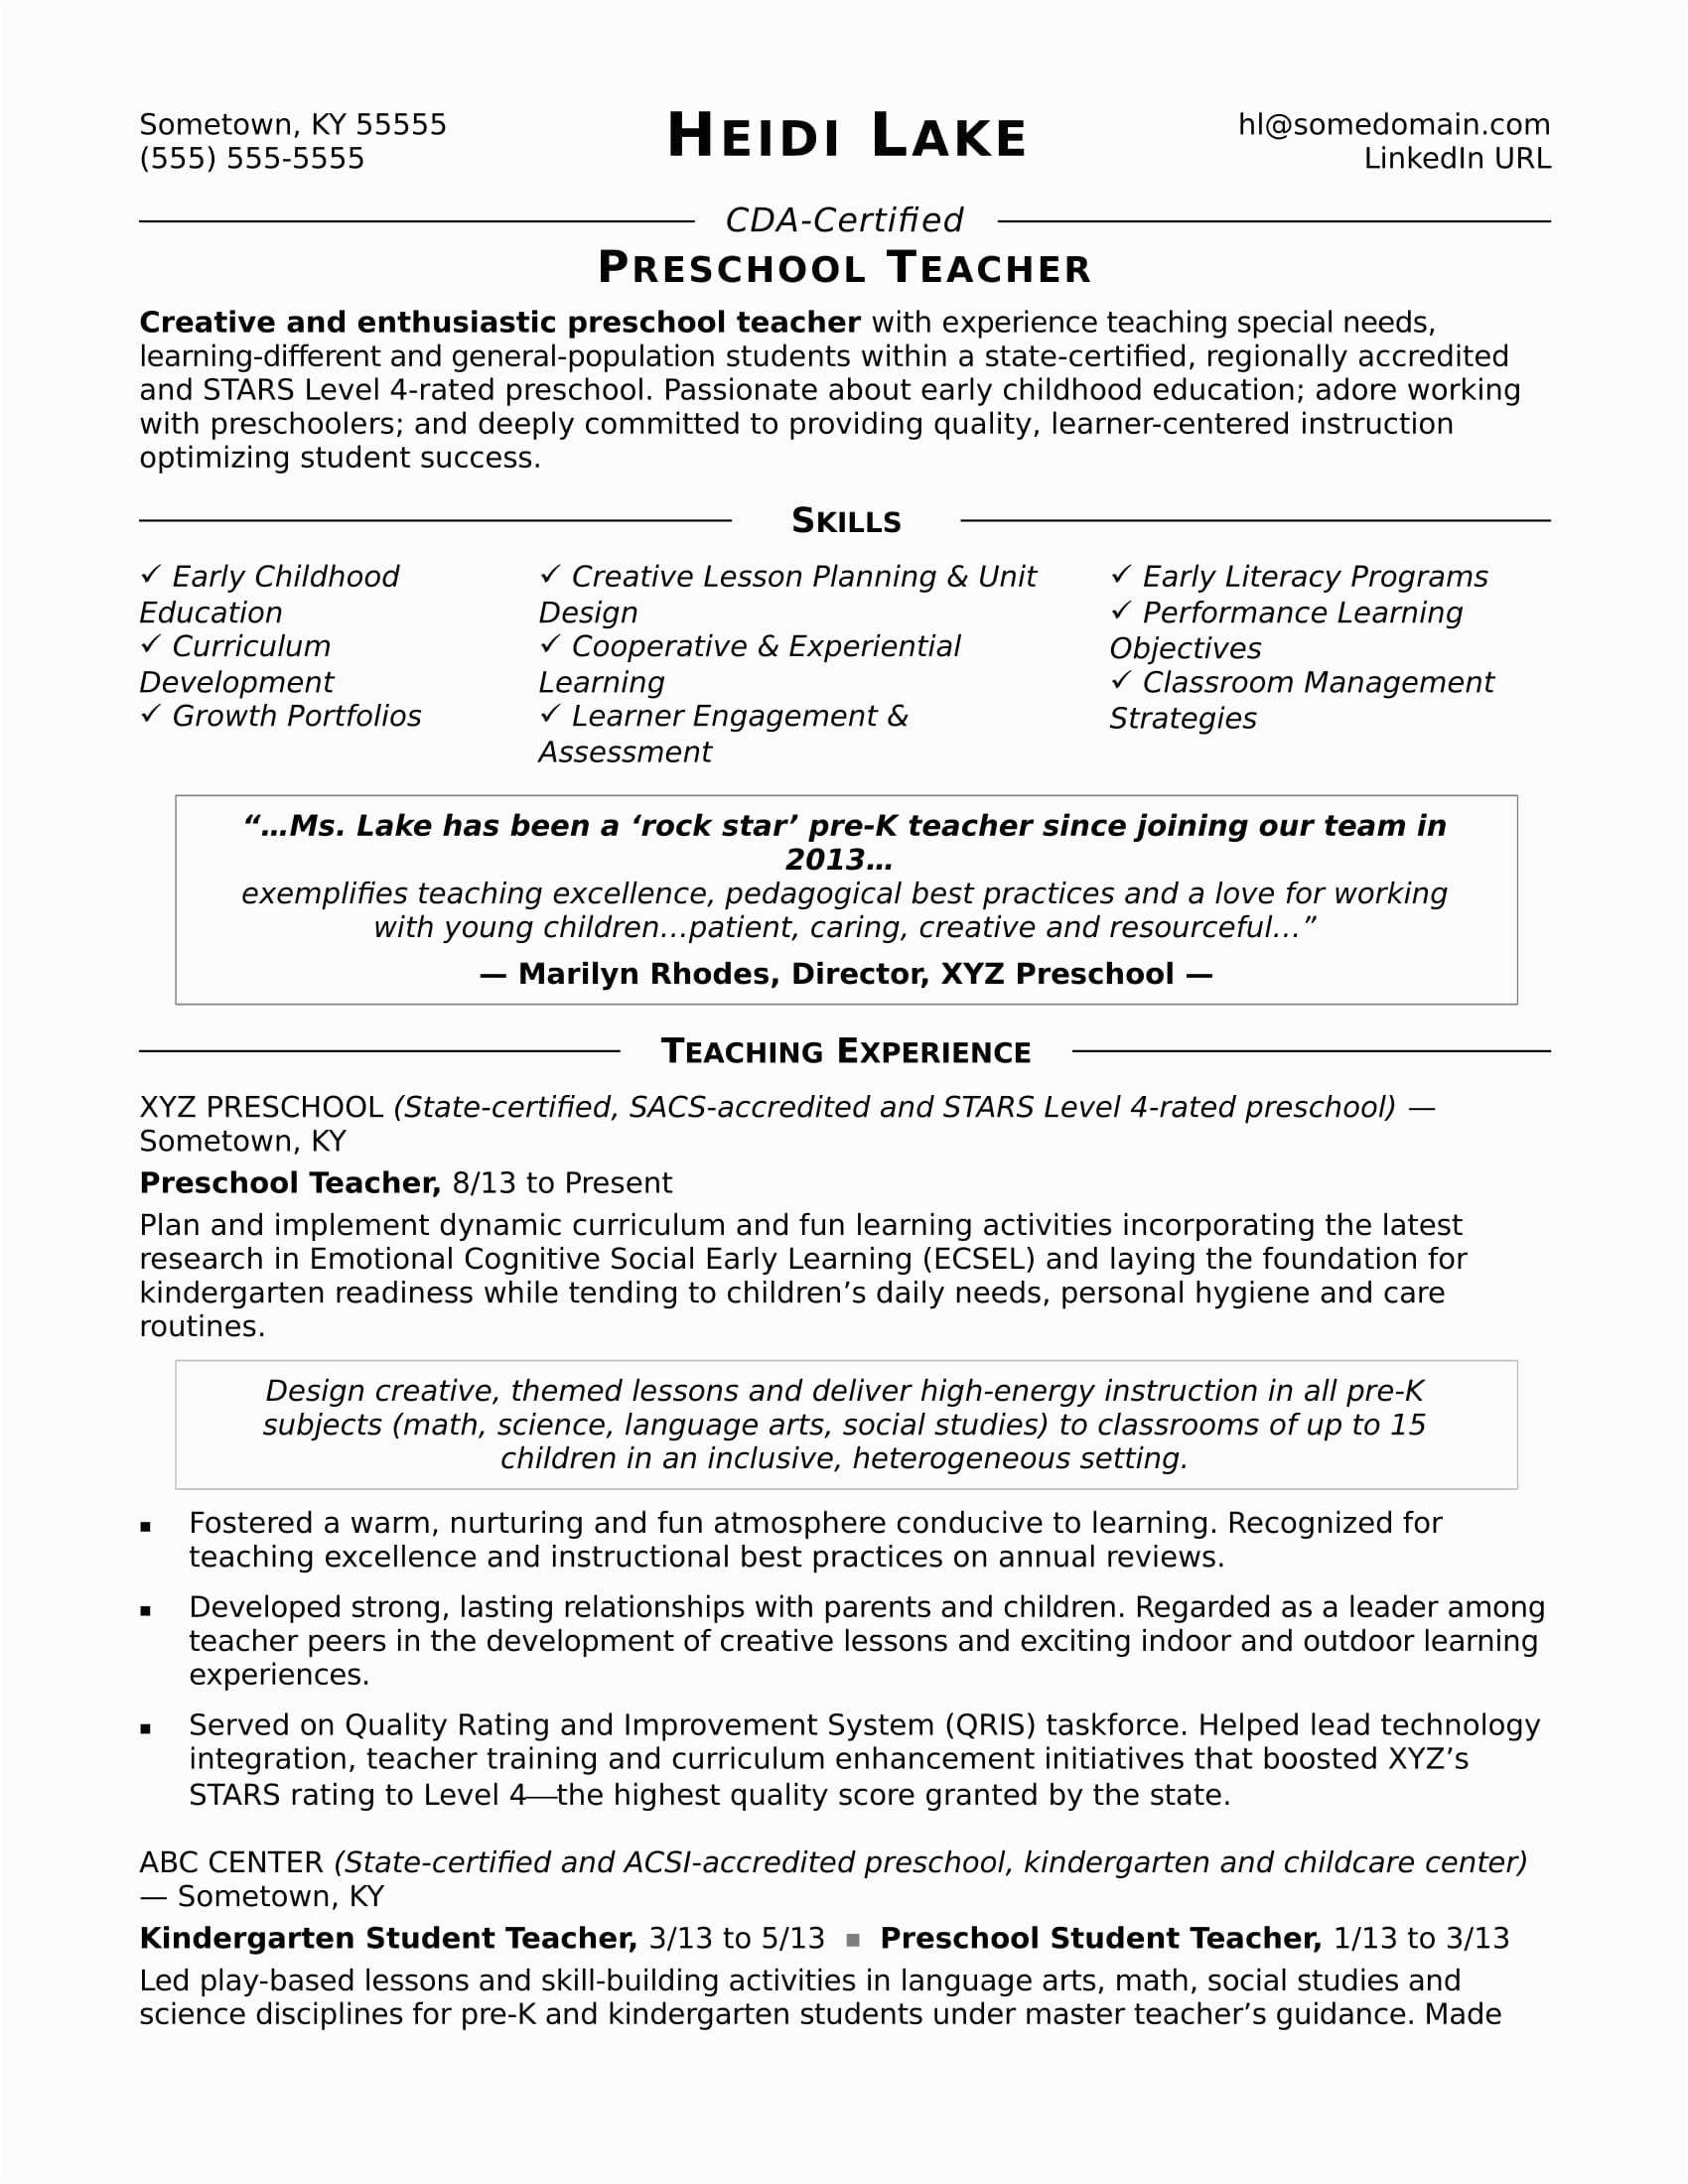 Entry Level Preschool Teacher Resume Sample Sample Teacher Resume for Preschool Preschool Teacher Resume